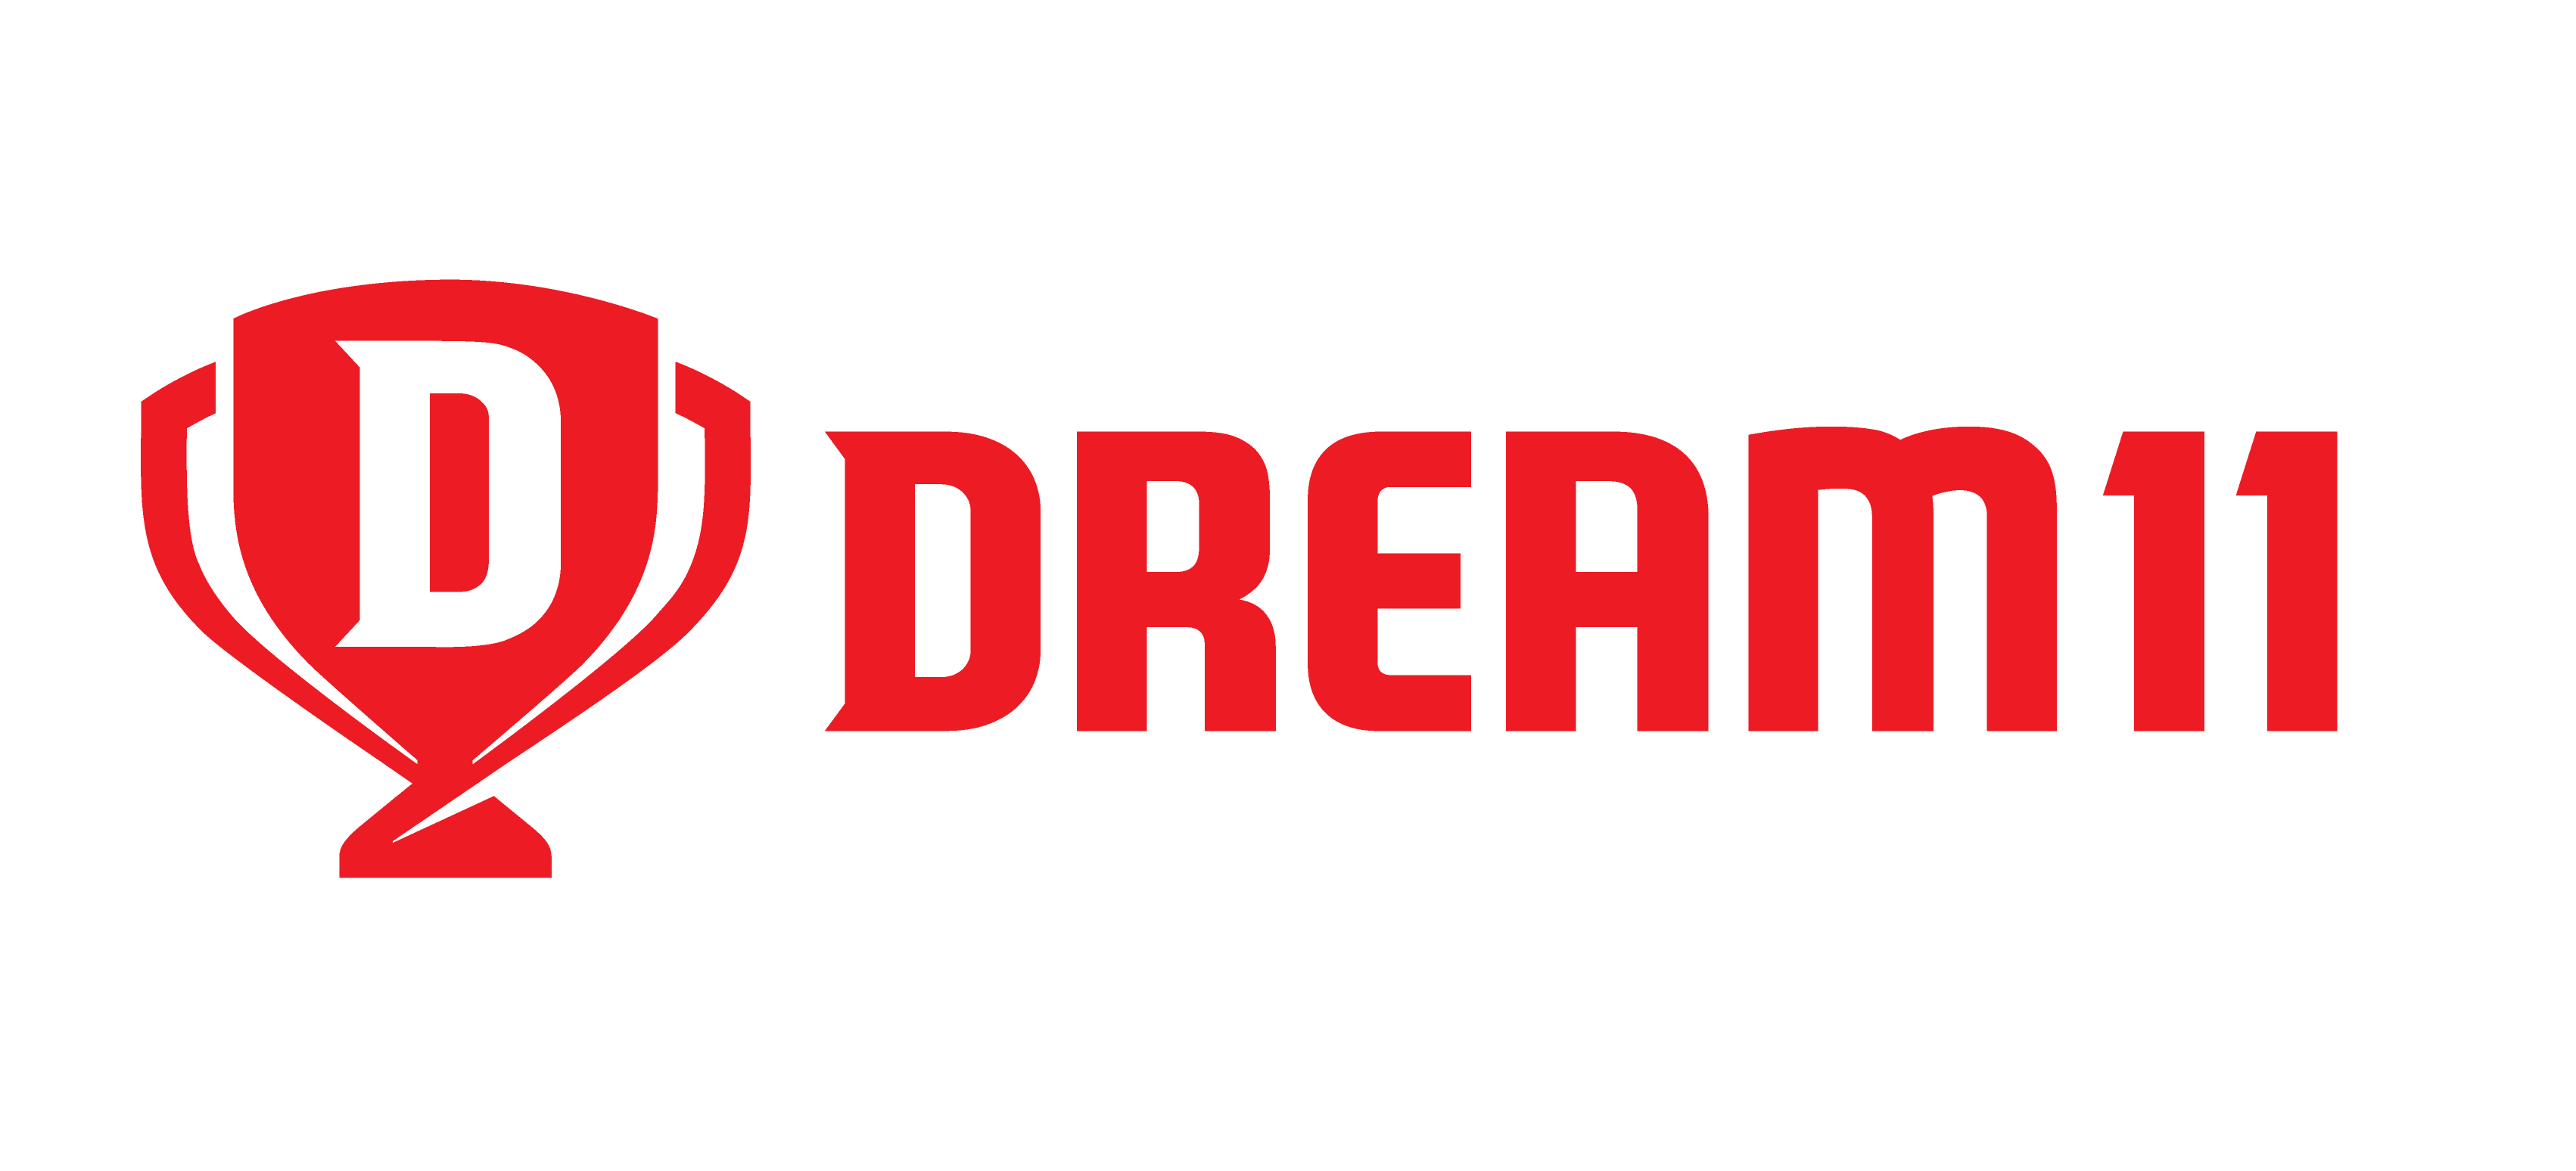 Design jobs at Dream11